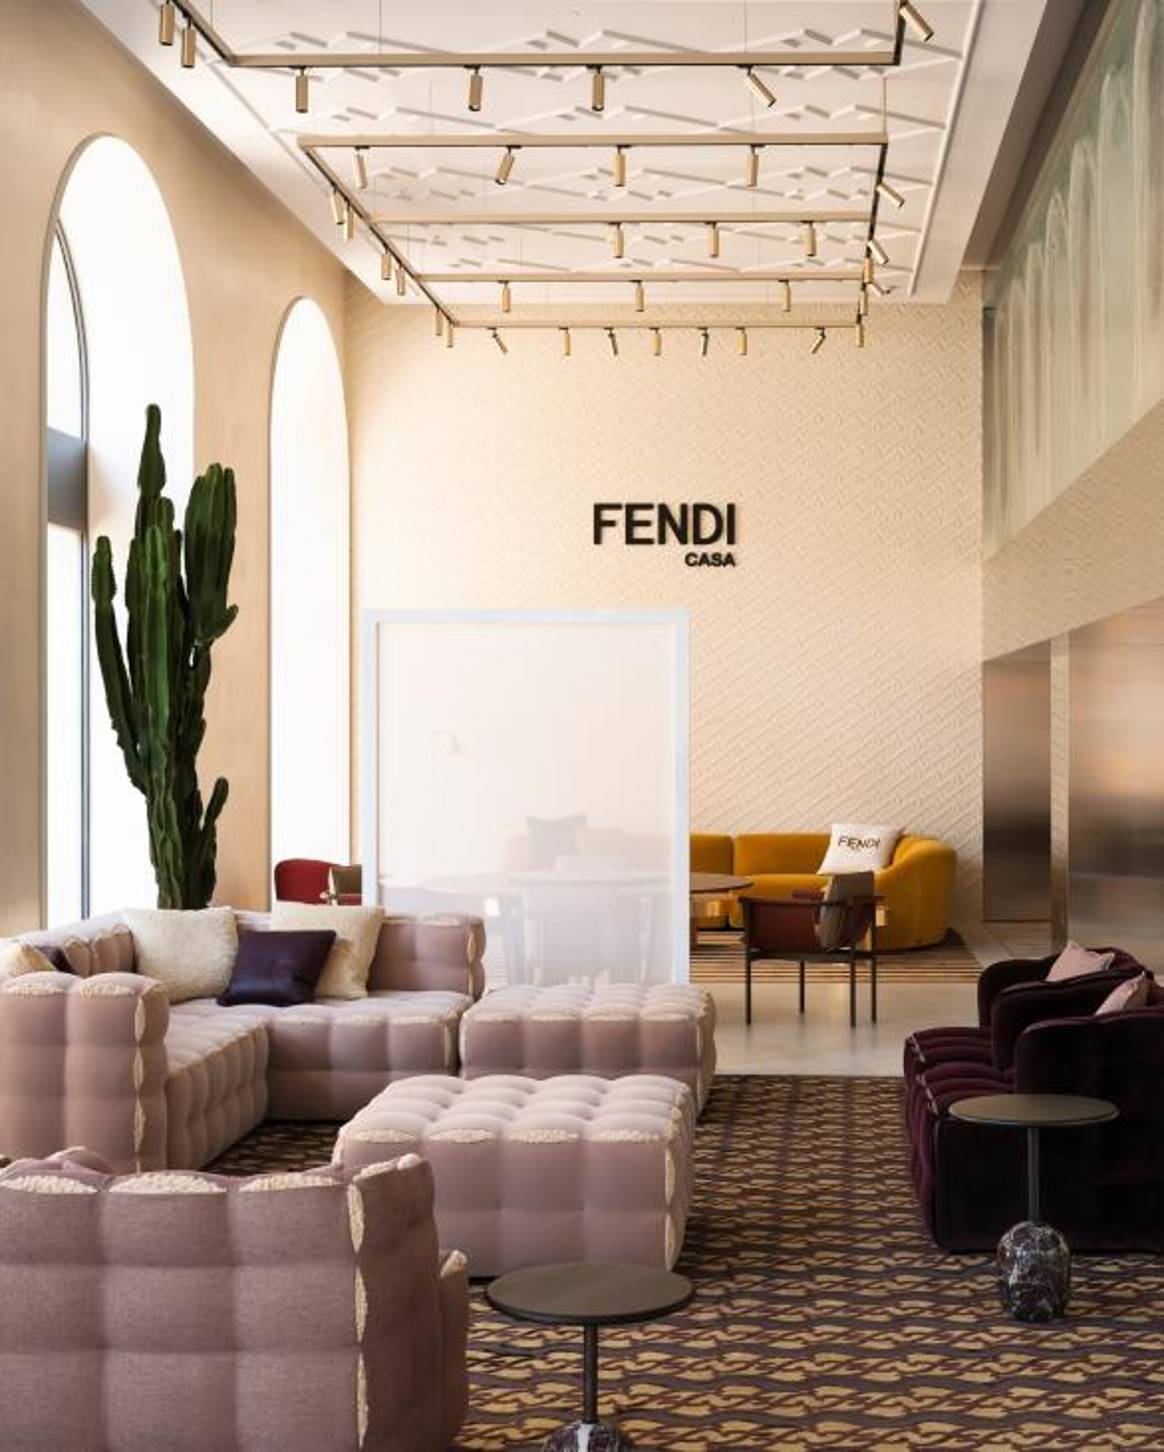 Fendi-Casa-Store in Mailand. Bild: Fendi